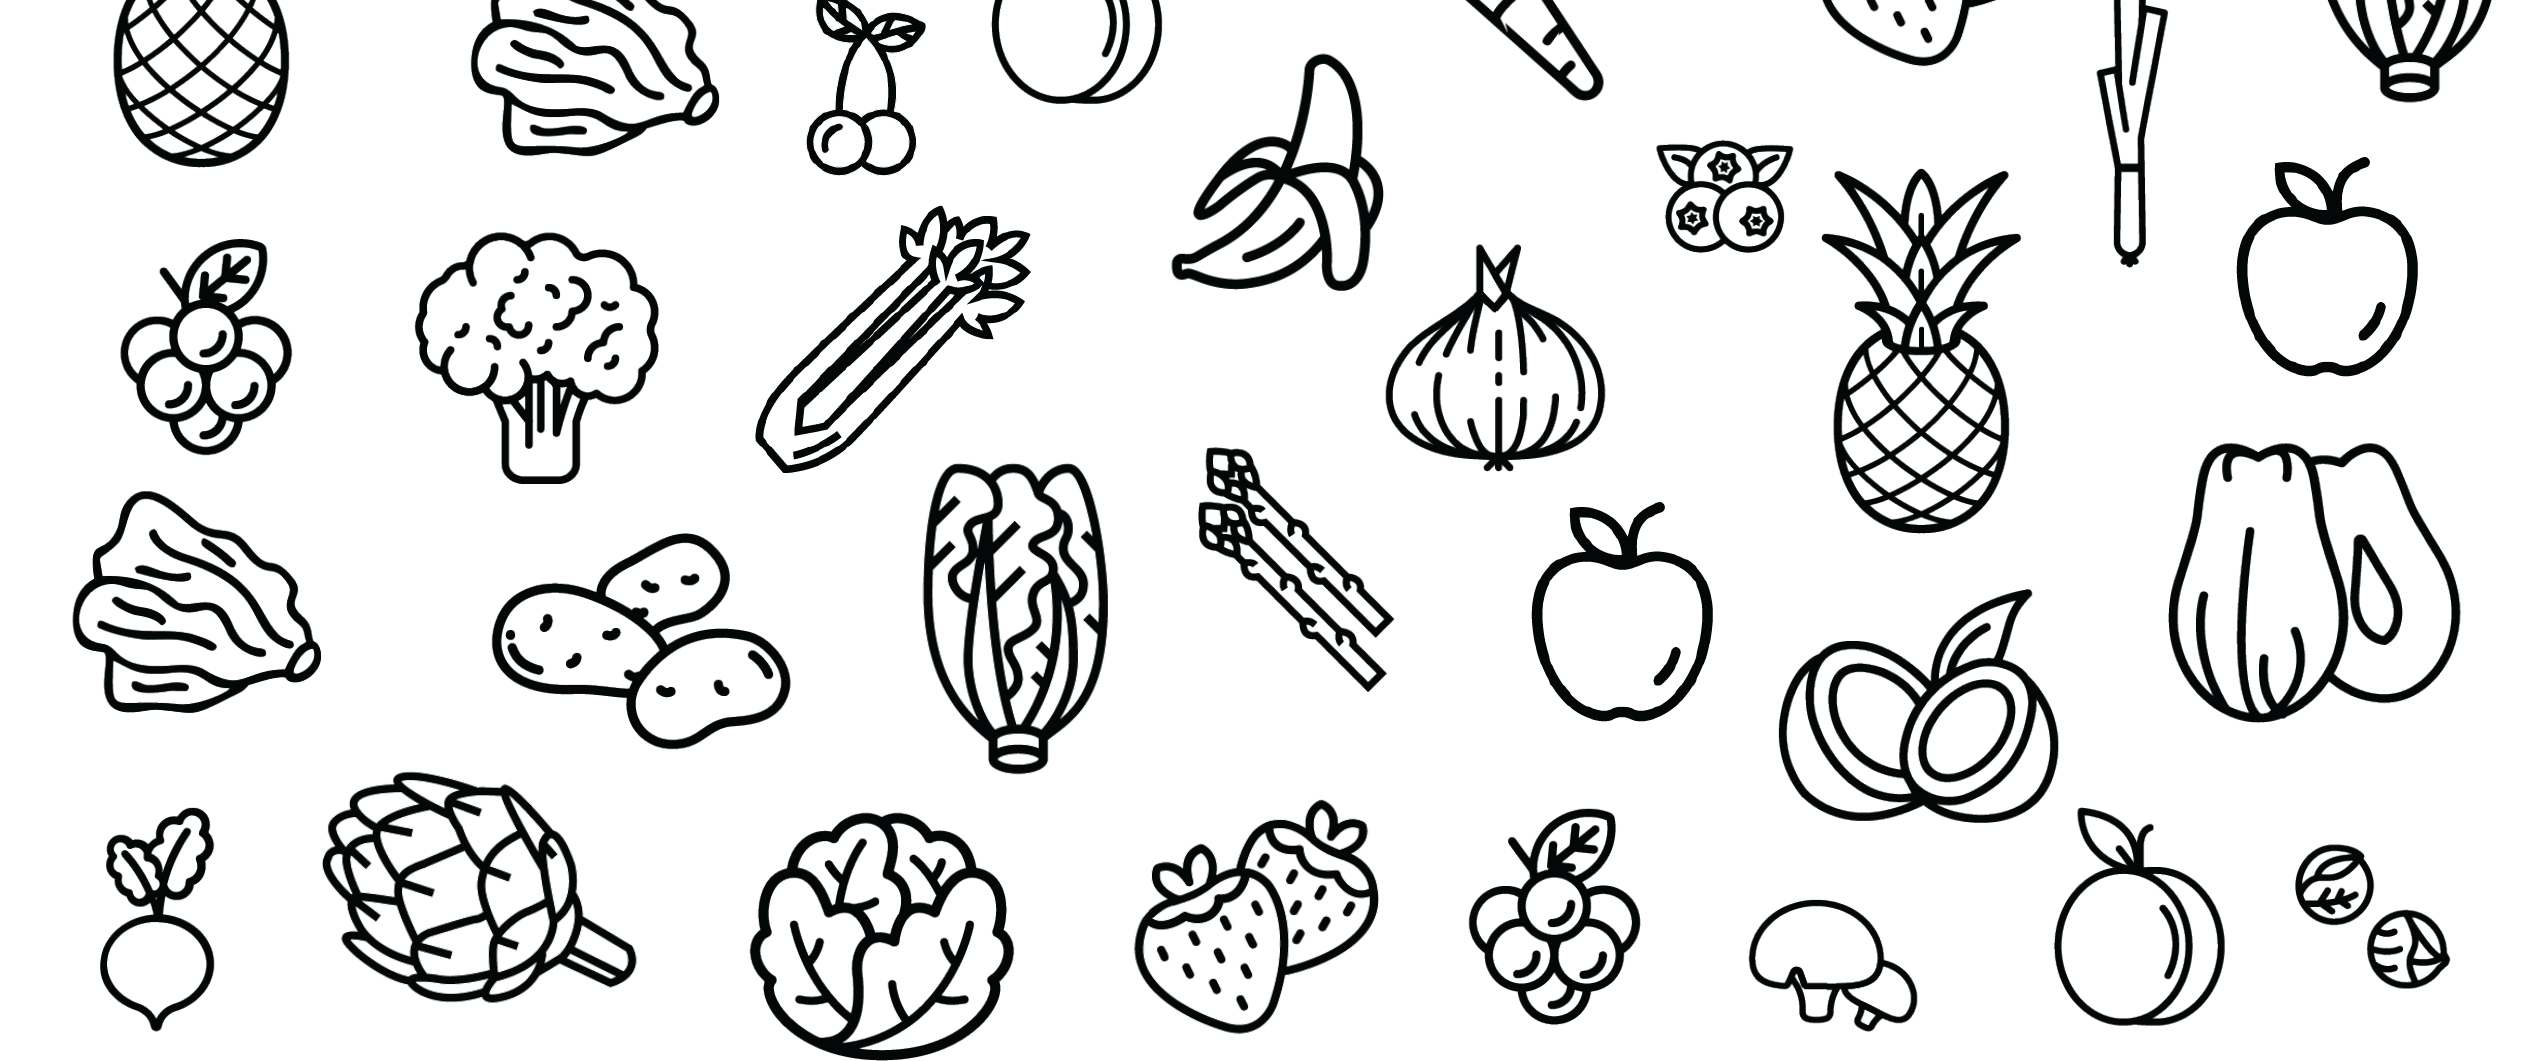 Раскраска овощи и фрукты для детей